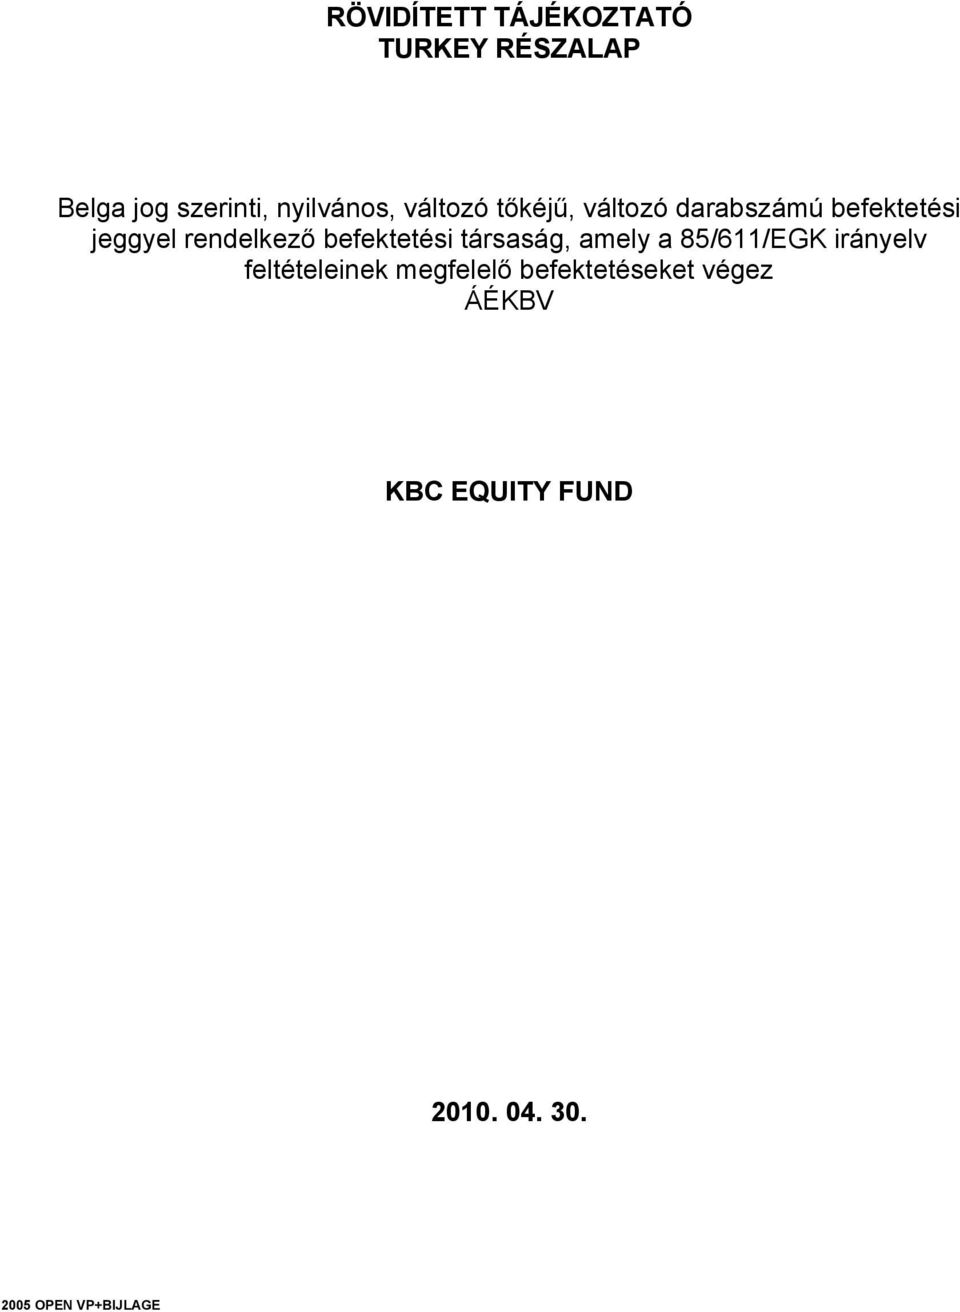 befektetési társaság, amely a 85/611/EGK irányelv feltételeinek